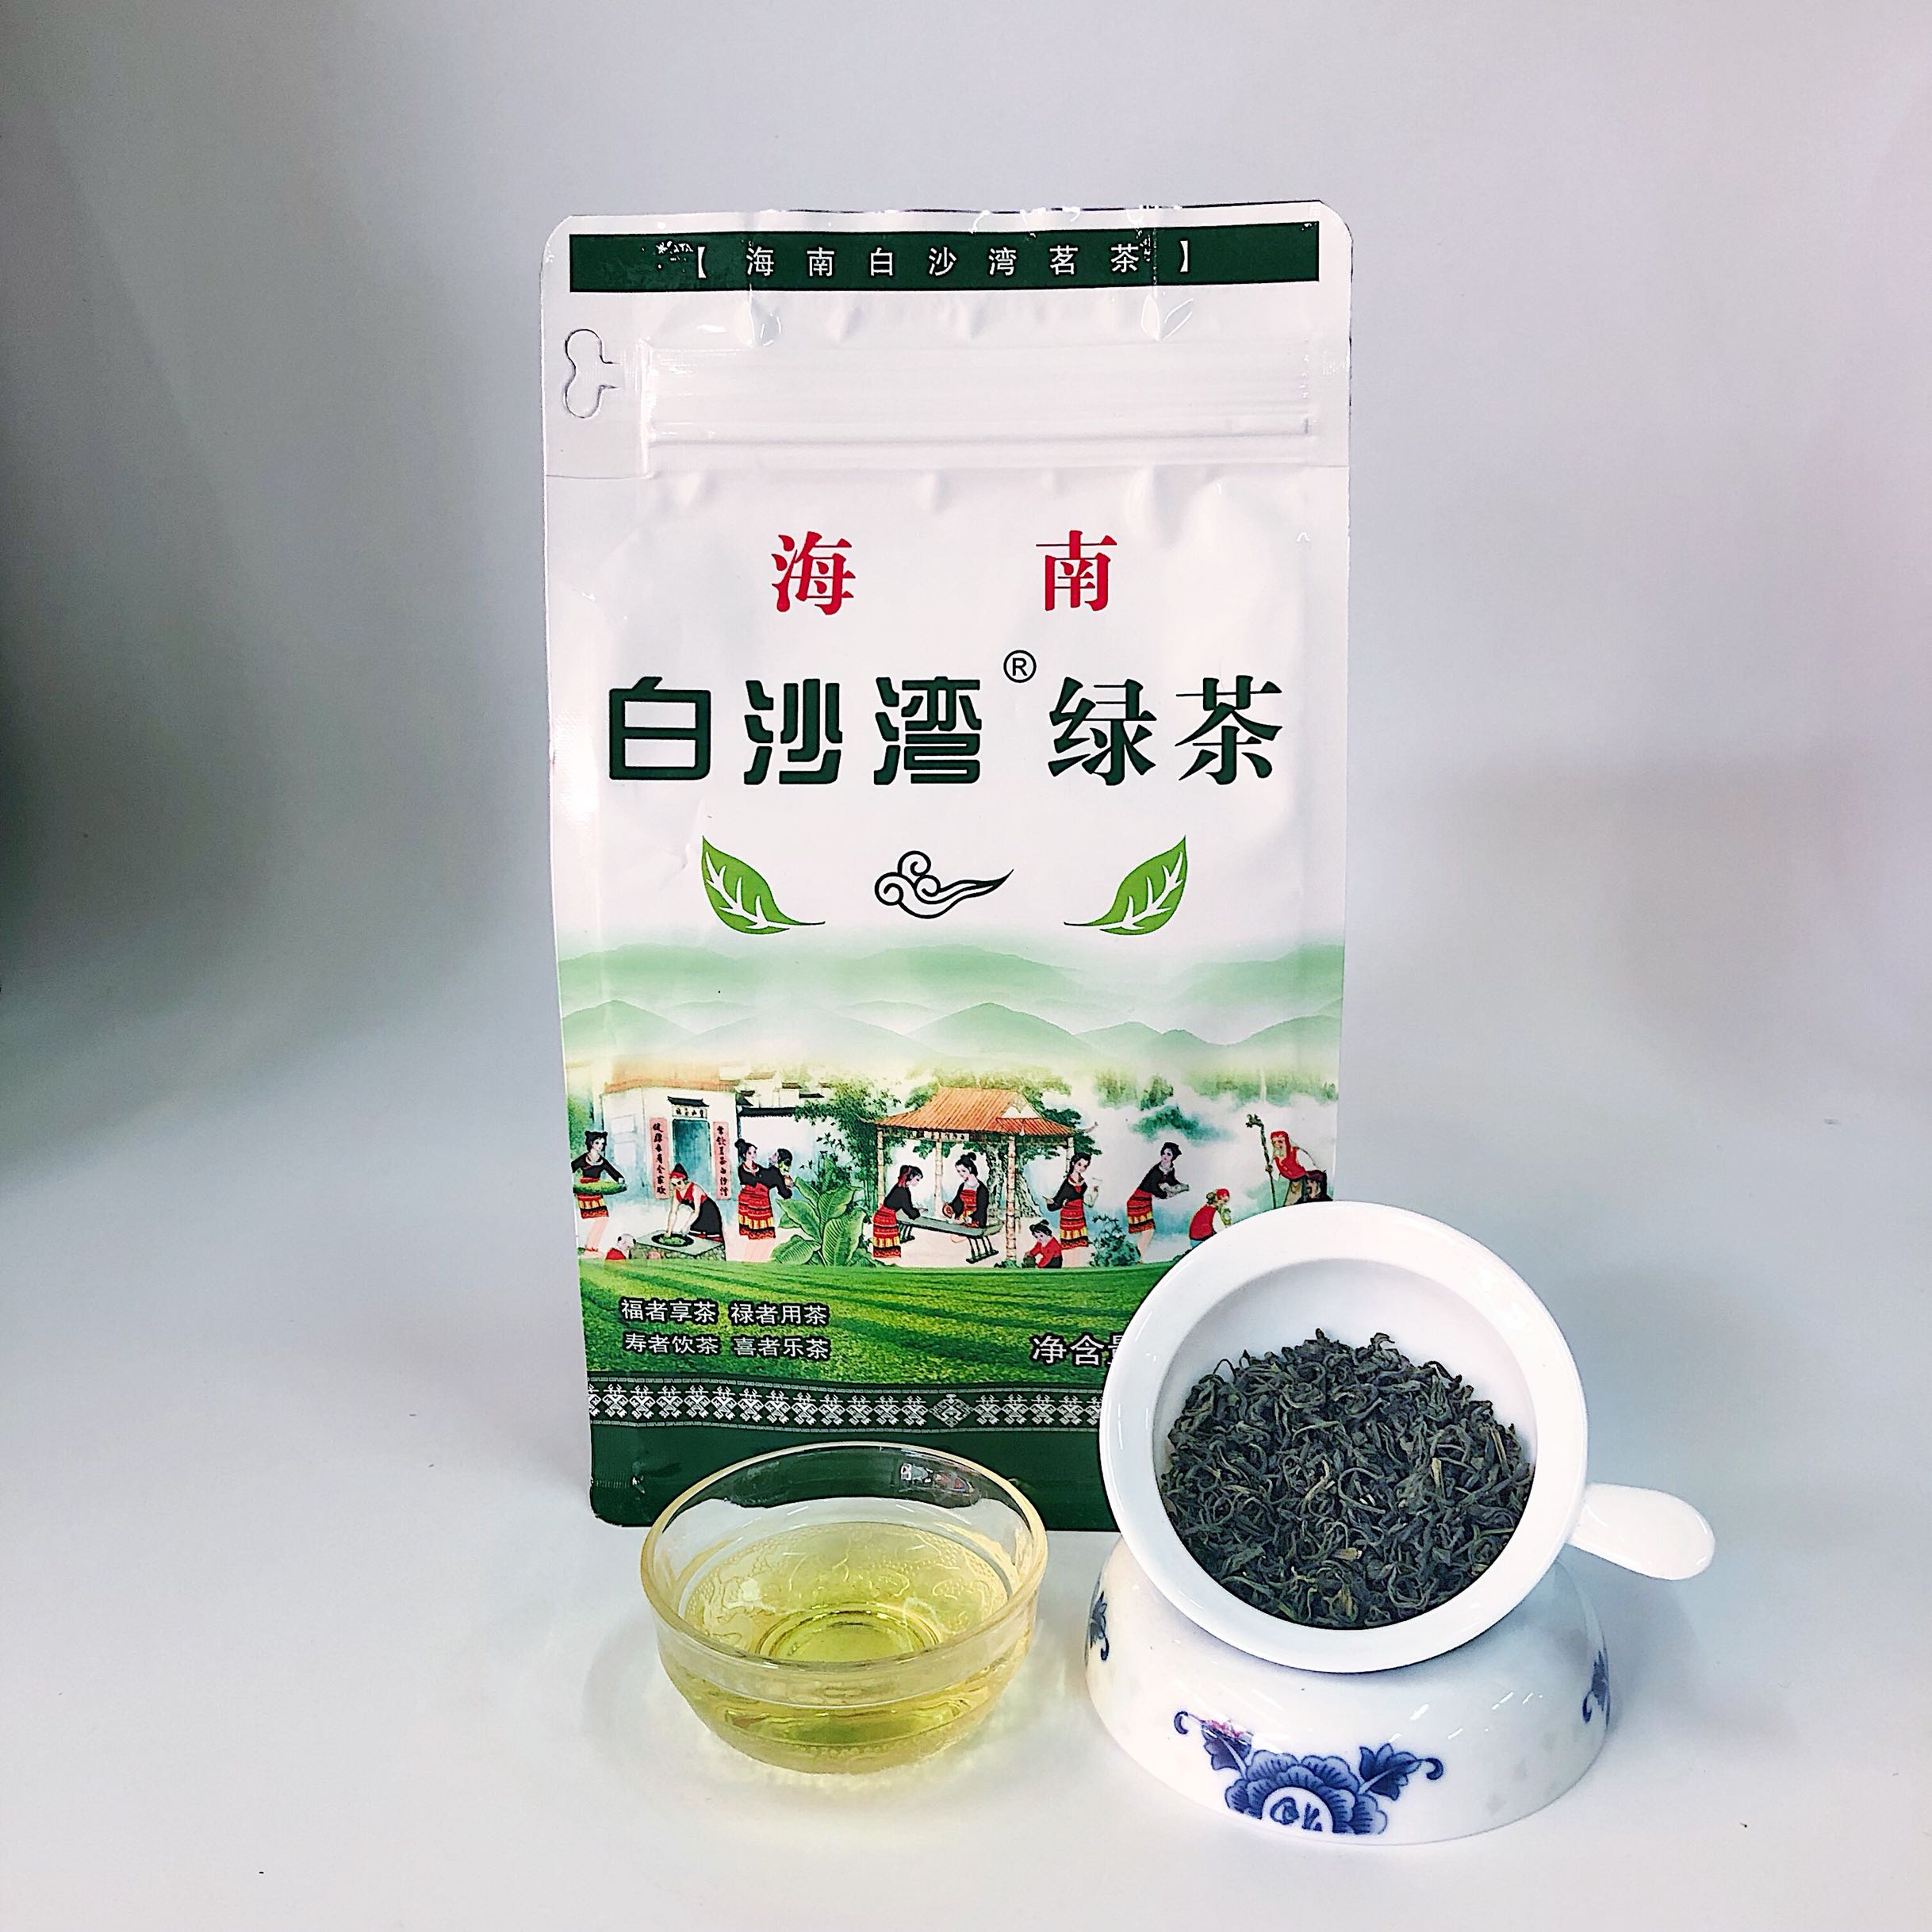 【白沙湾】海南特产五指山绿茶茶叶 250g